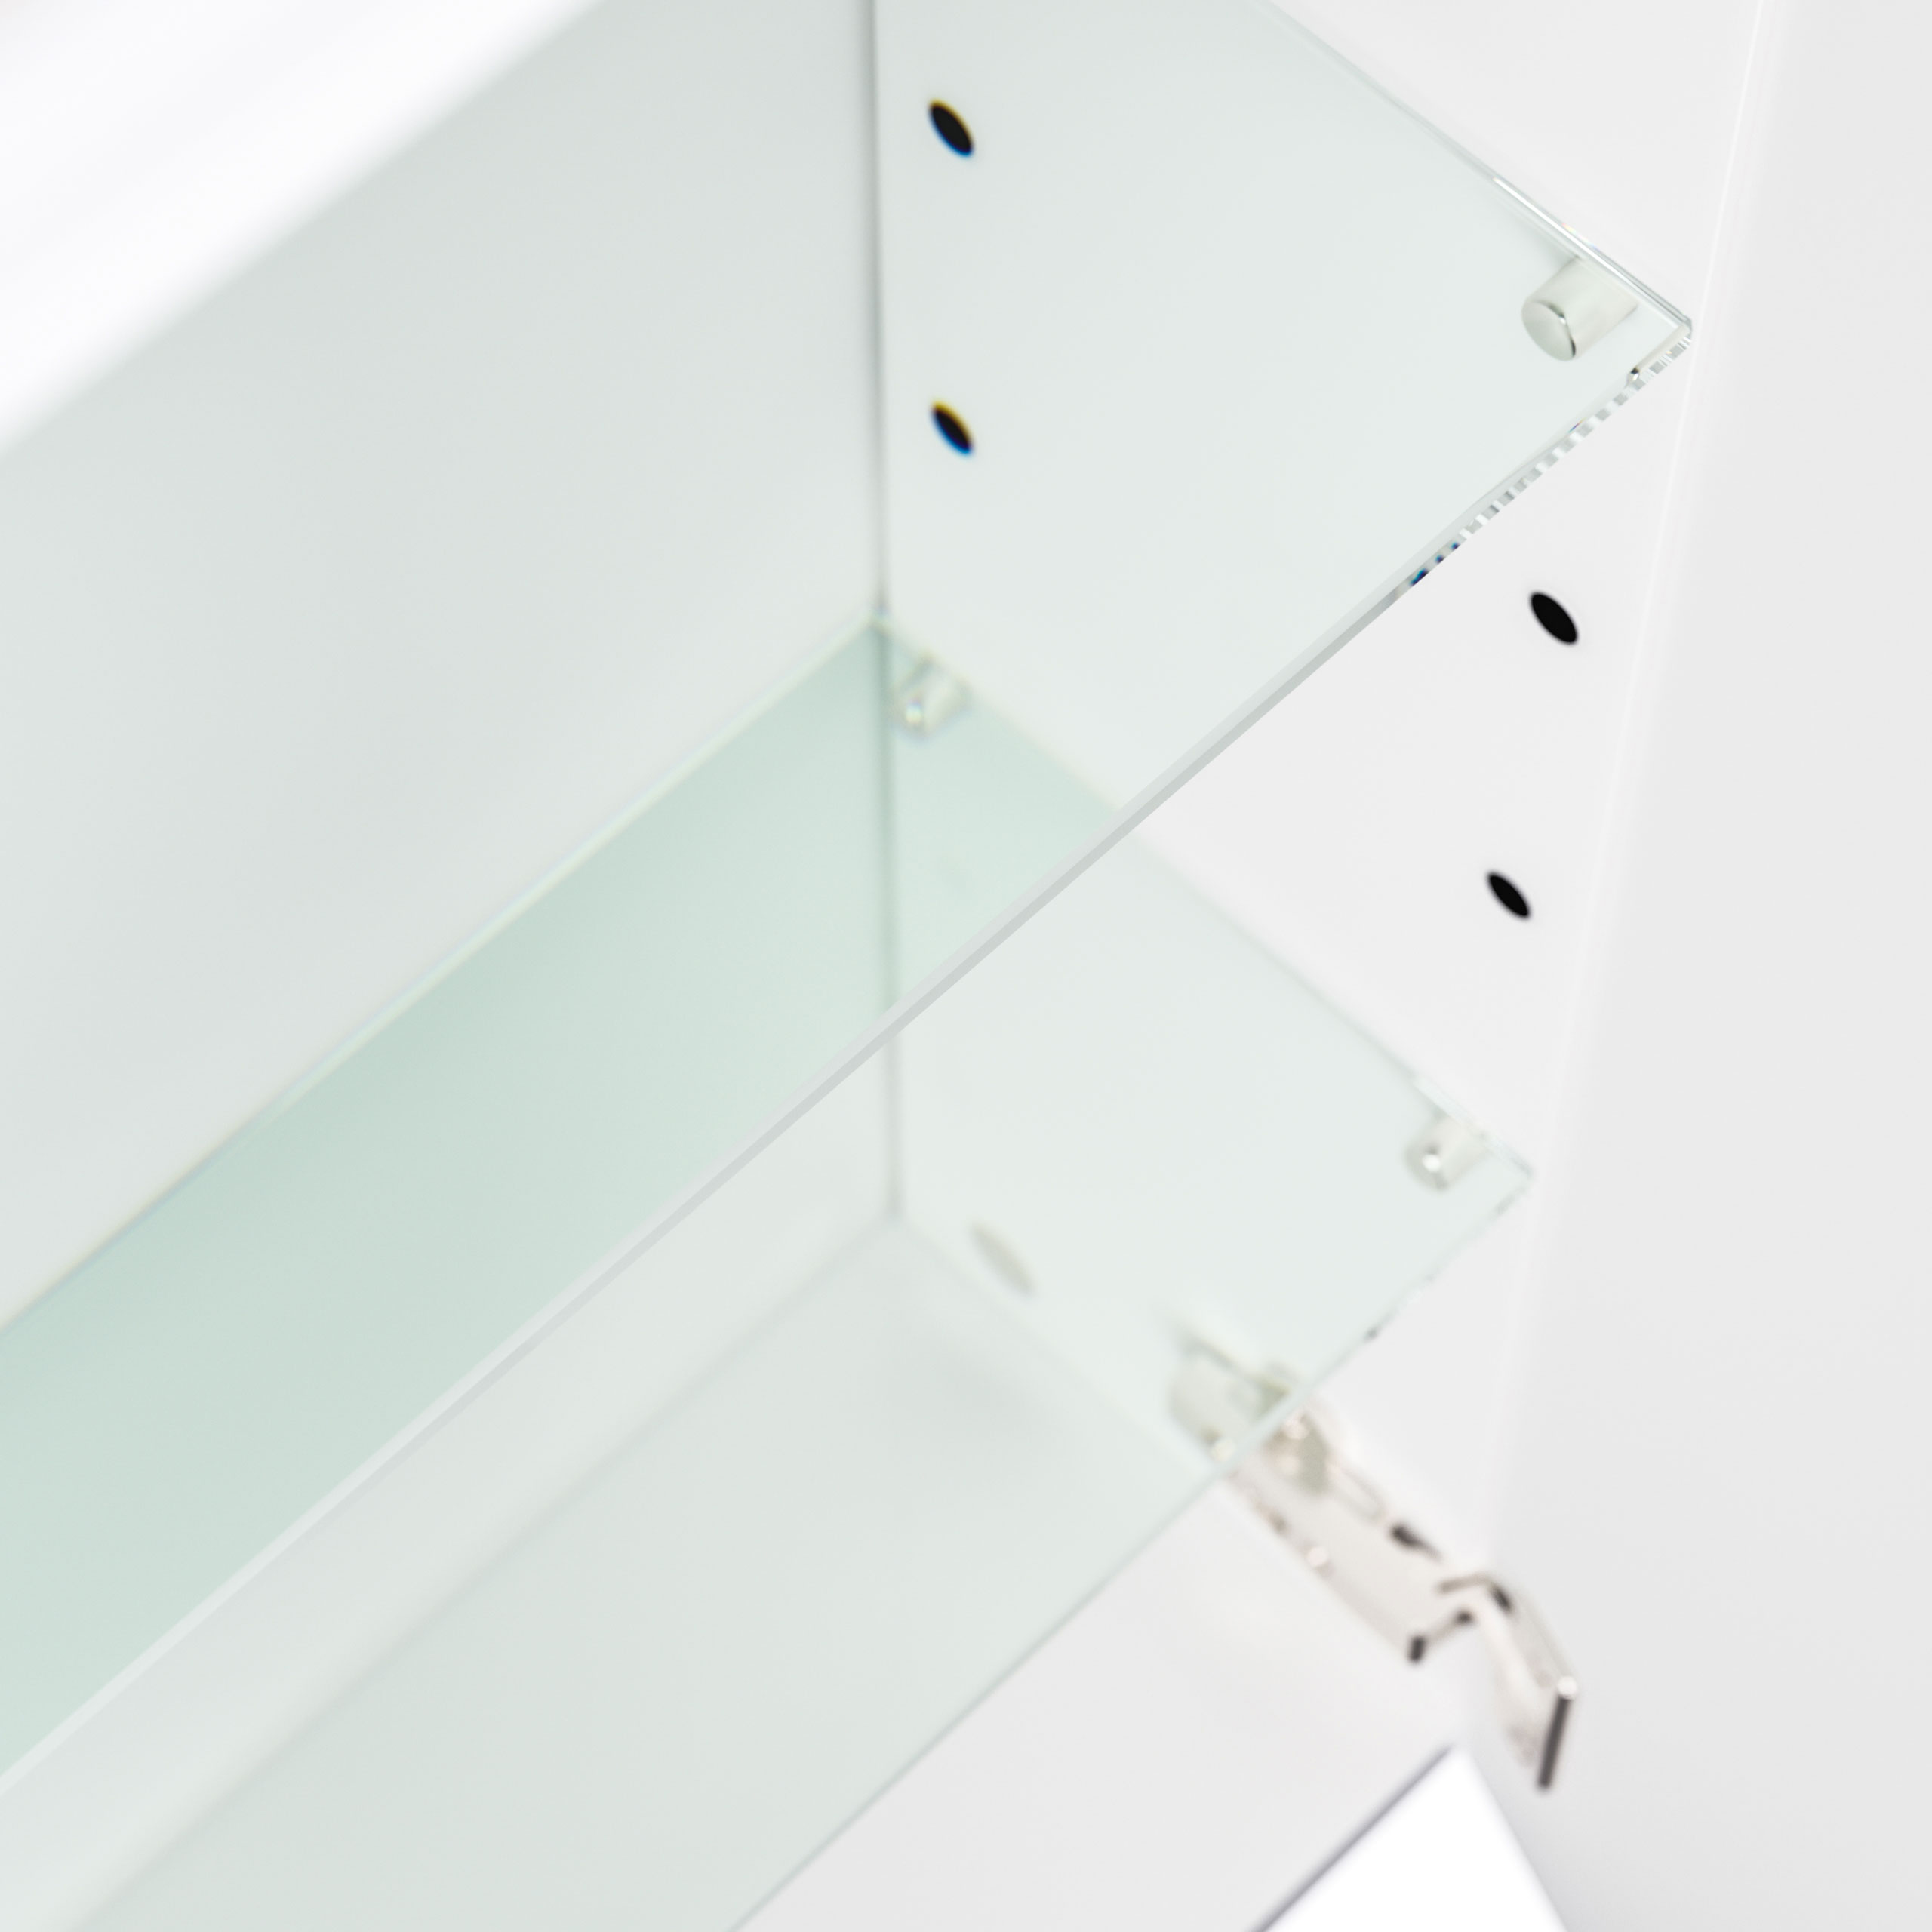 Spiegelschrank 140cm inkl. Design LED-Lampe und Glasböden anthrazit gemasert